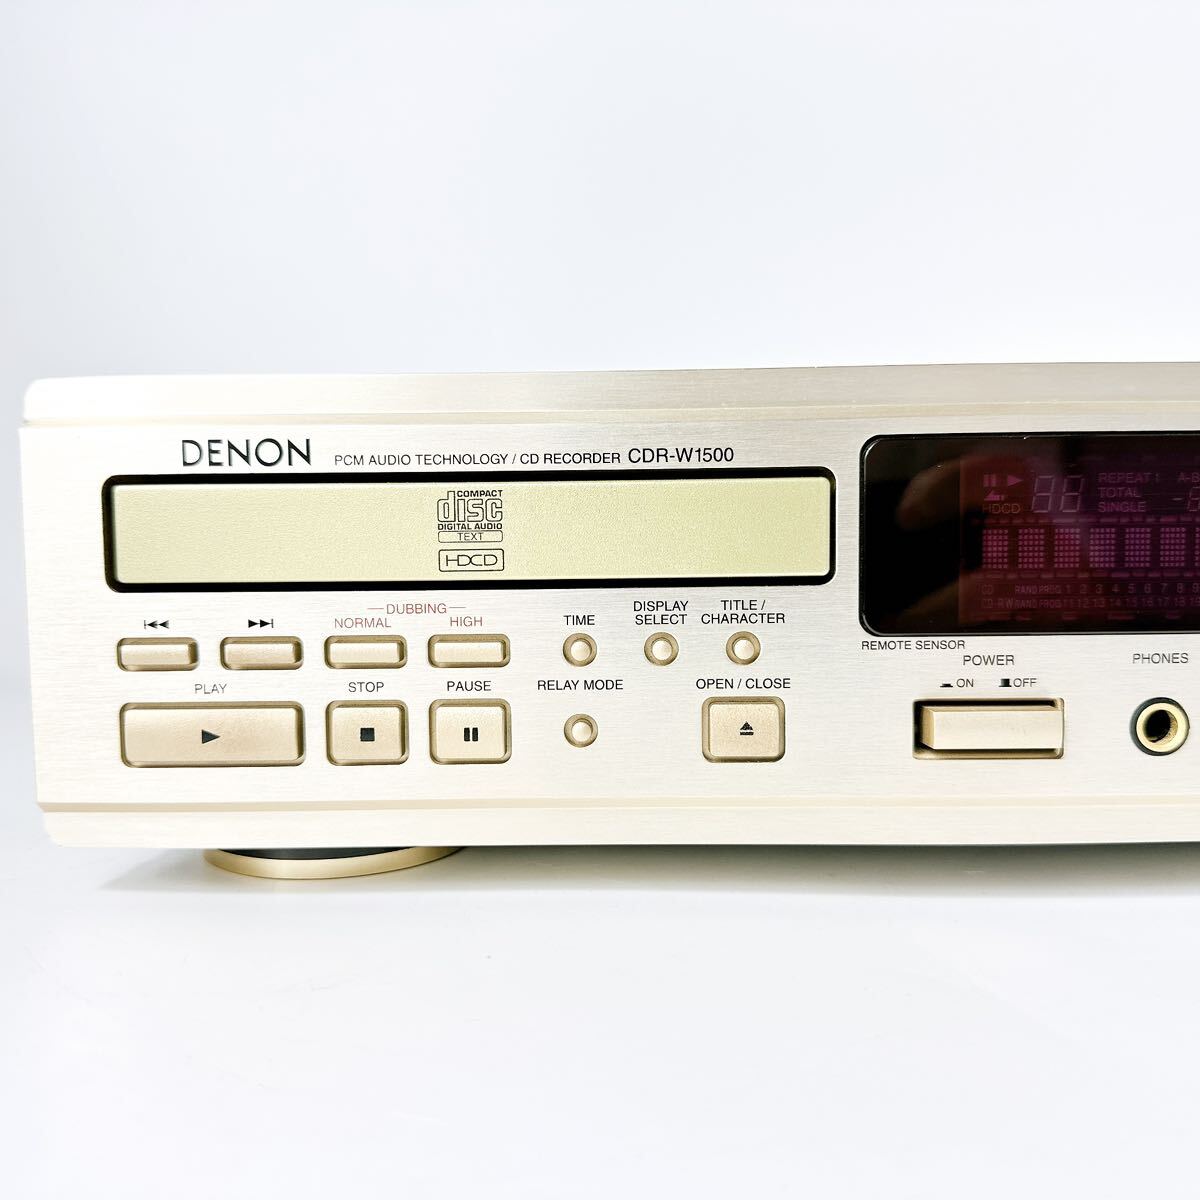 DENON CDR-W1500 CD recorder Denon 